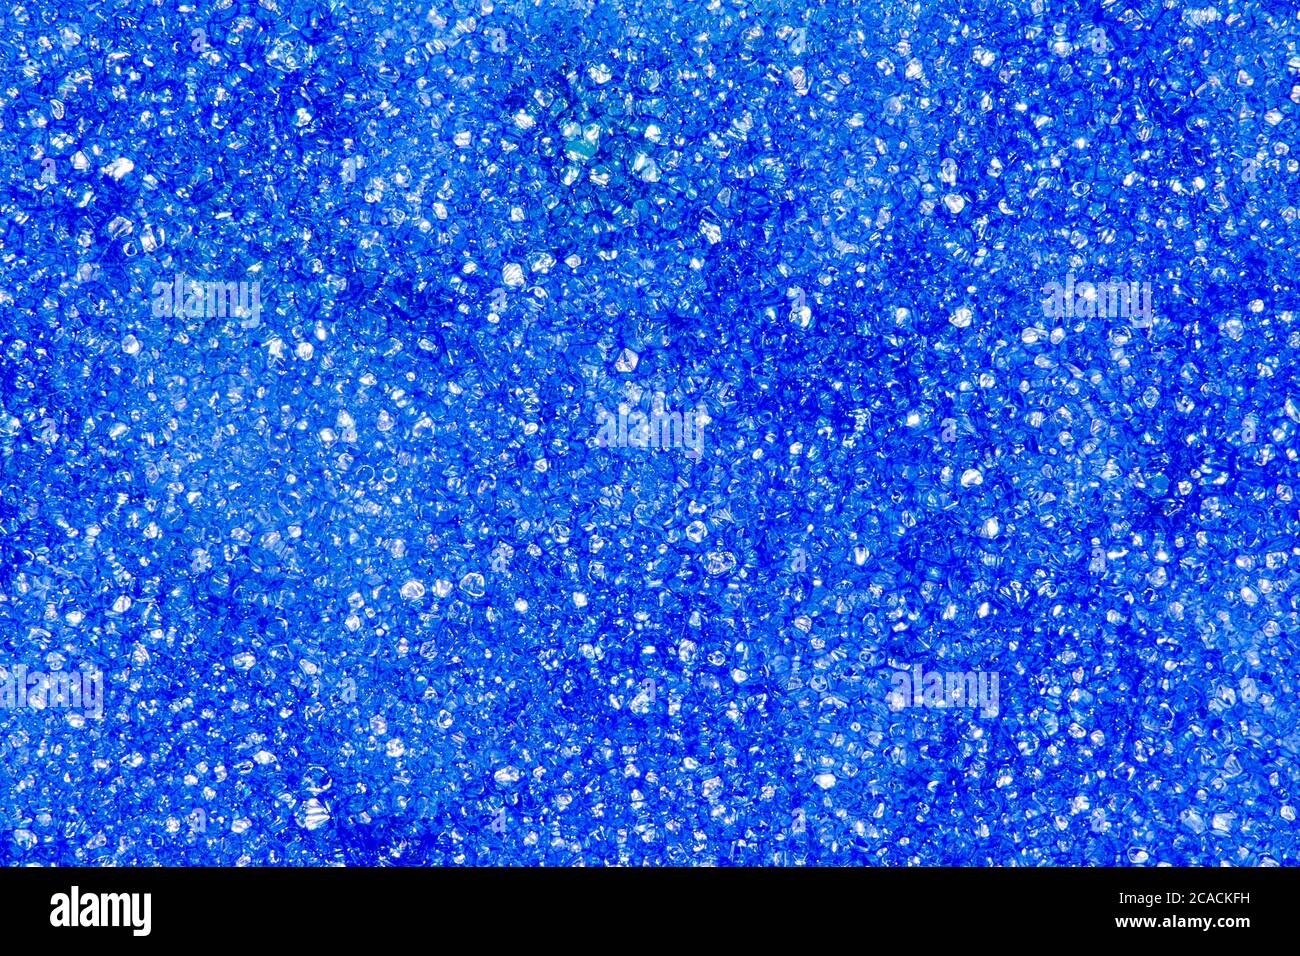 Bild Hintergrund Schnitt Textur Schaum Gummi blau Stockfoto